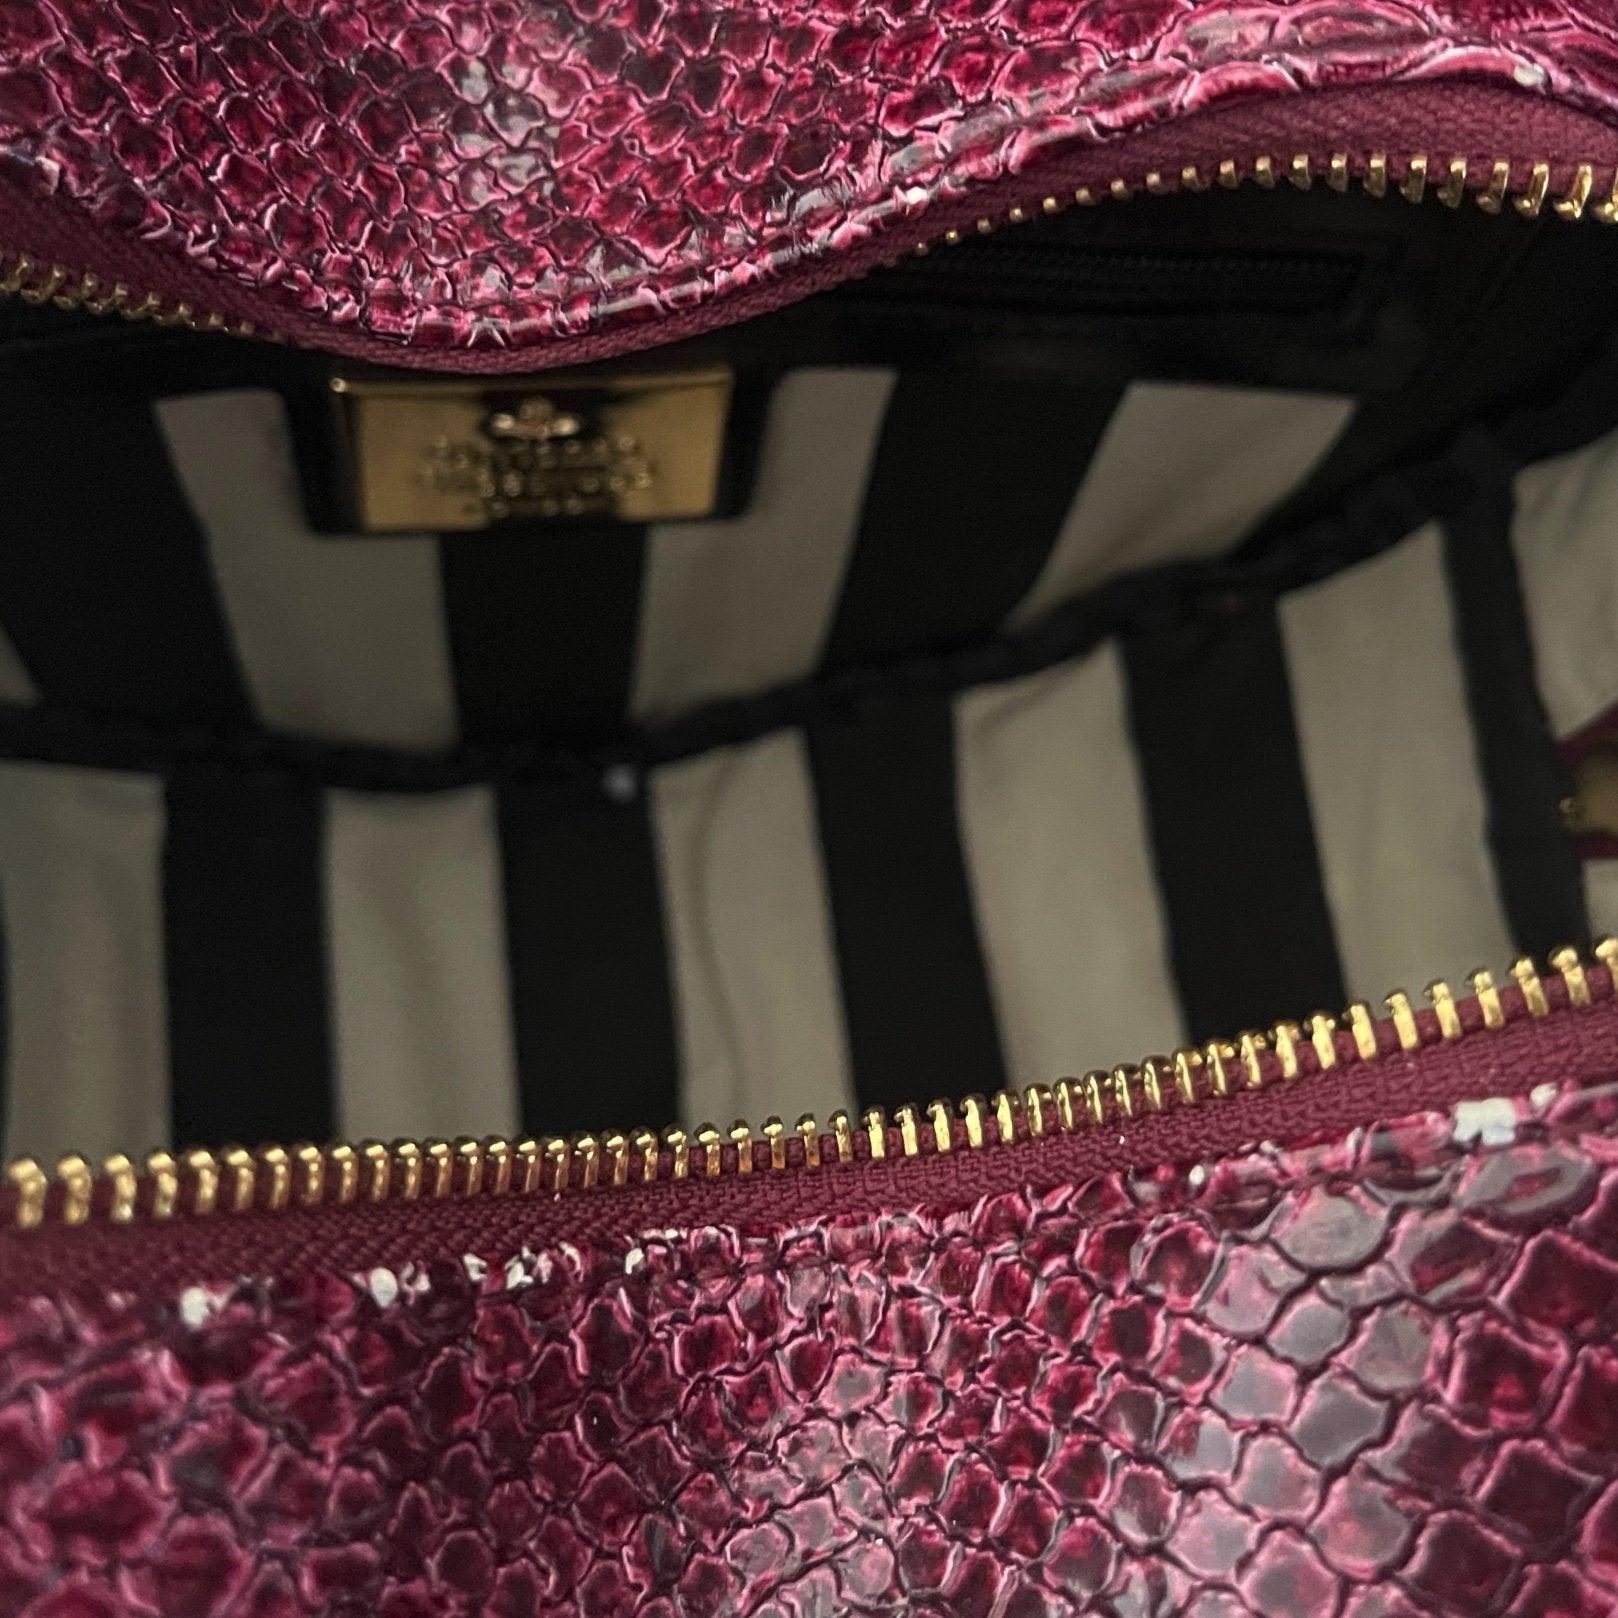 Vintage Vivienne Westwood Burgundy Snake Embossed Heart Bag